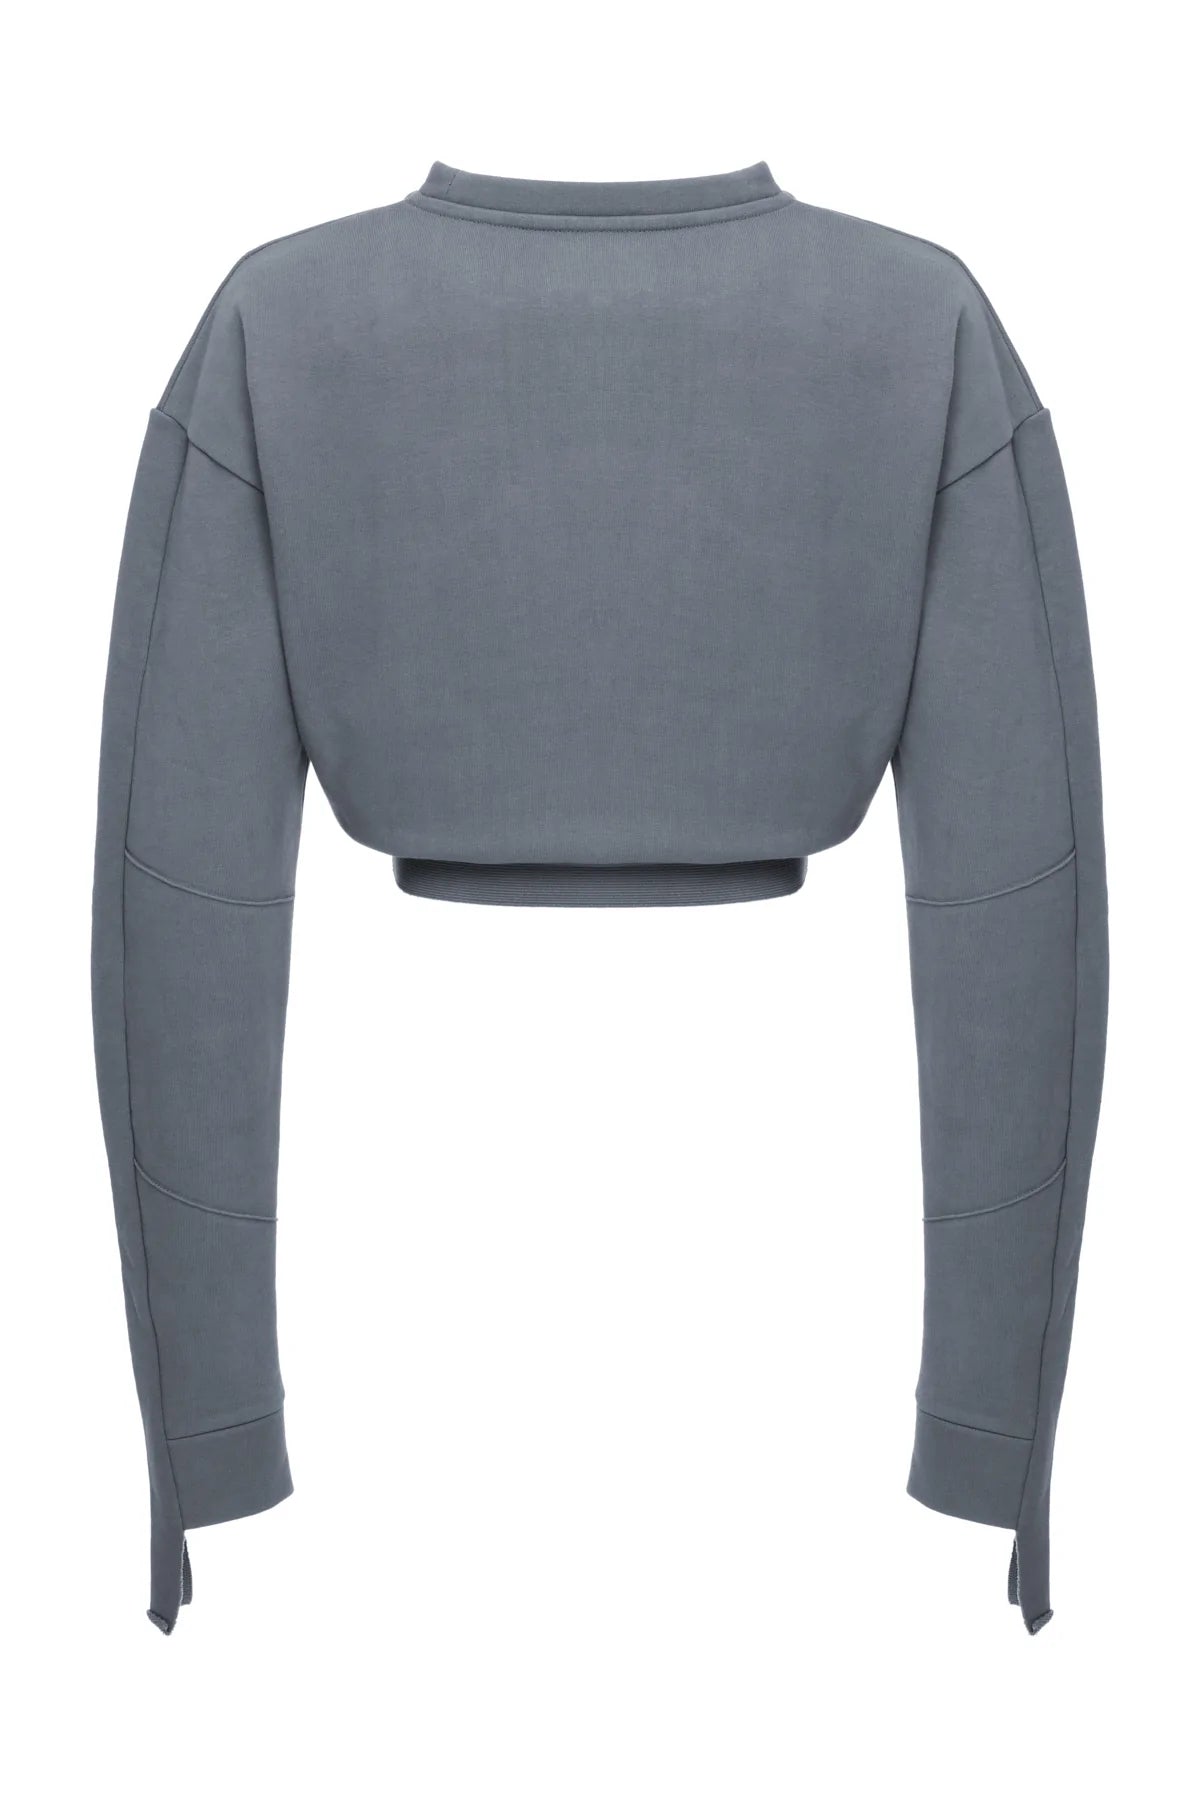 Astro - Grey Sweatshirt